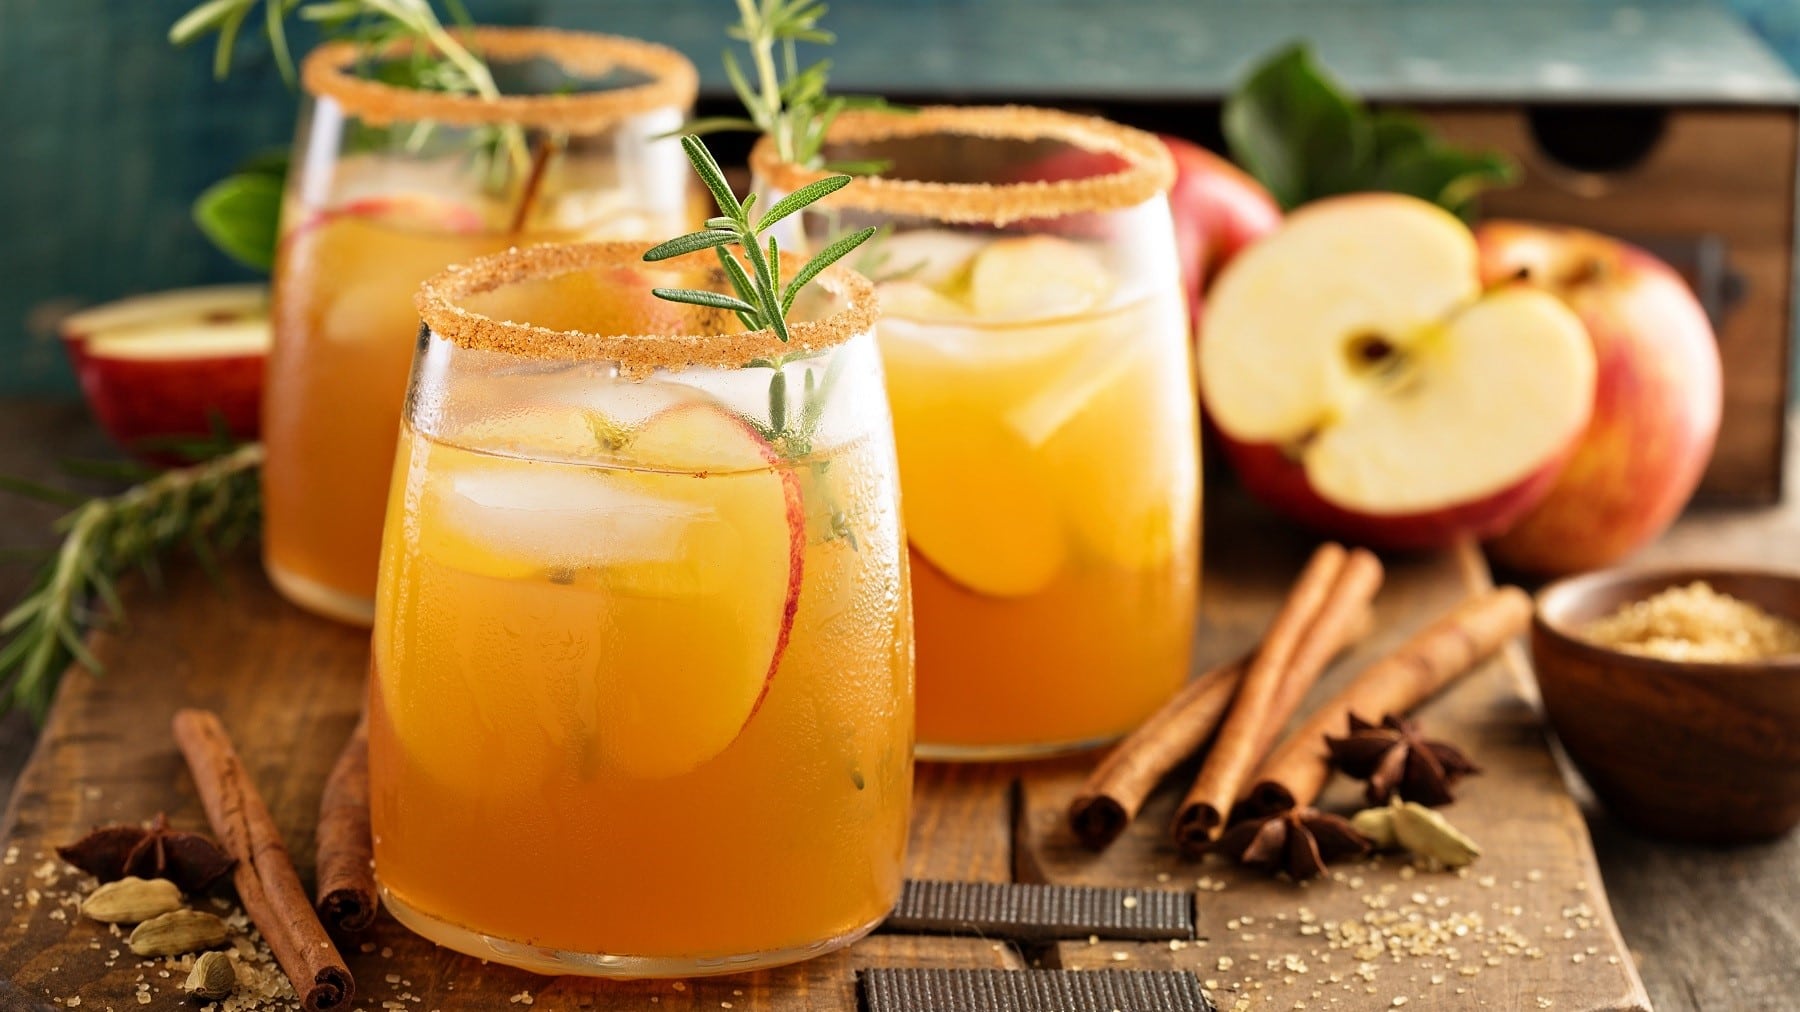 Drei Gläser Apple-Cider-Cocktail mit Zimt und Zucker am Rand. Die Cocktails sind angerichtet mit Eis, Apfel und Gewürzen. Umdie Gläser herum liegen herbstliche Gewürze, Zimtstangen, Zimt und Zucker. Im Hintergrund liegen Äpfel. Die Gläser stehen auf einem braunen Holzbrett.